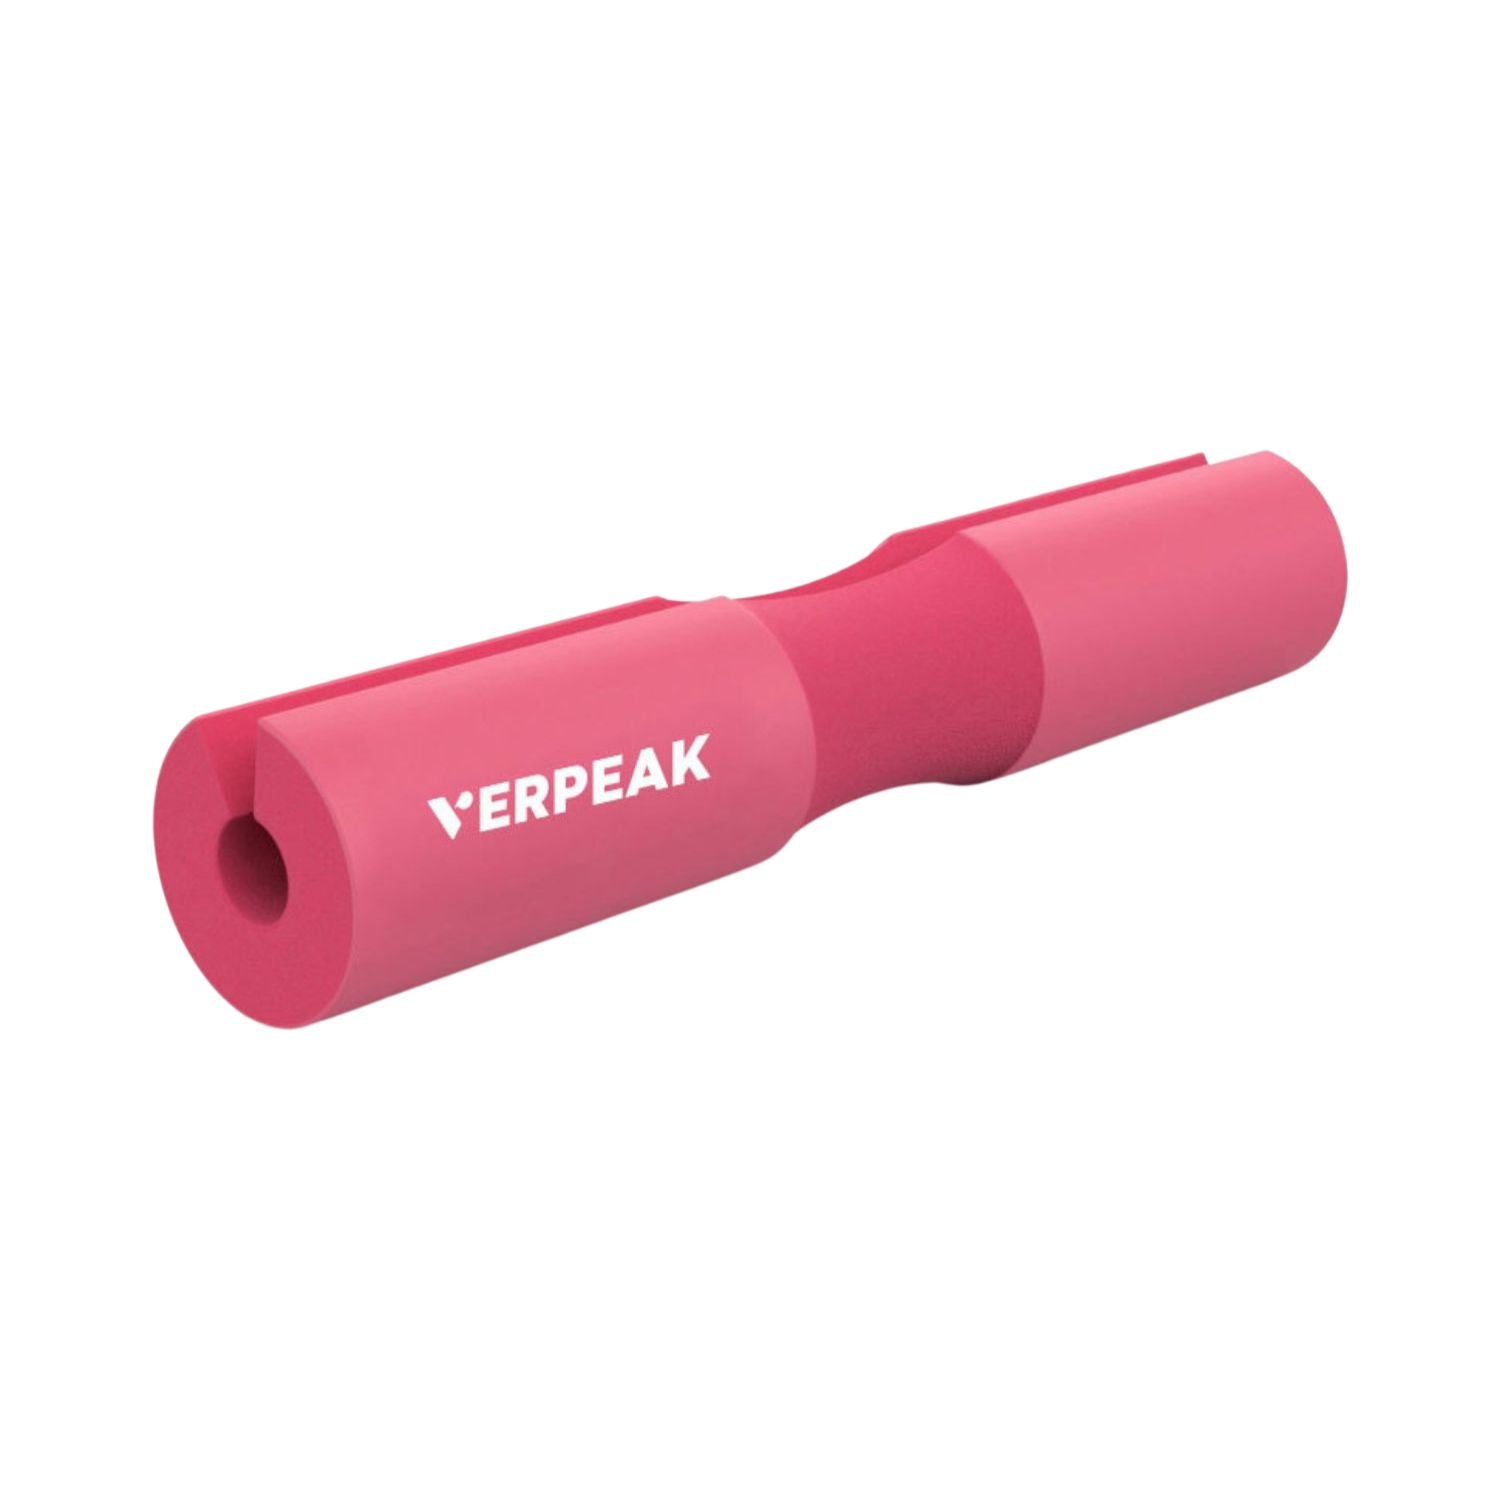 VERPEAK Barbell Squat Pad (Pink) VP-BSP-101-MD